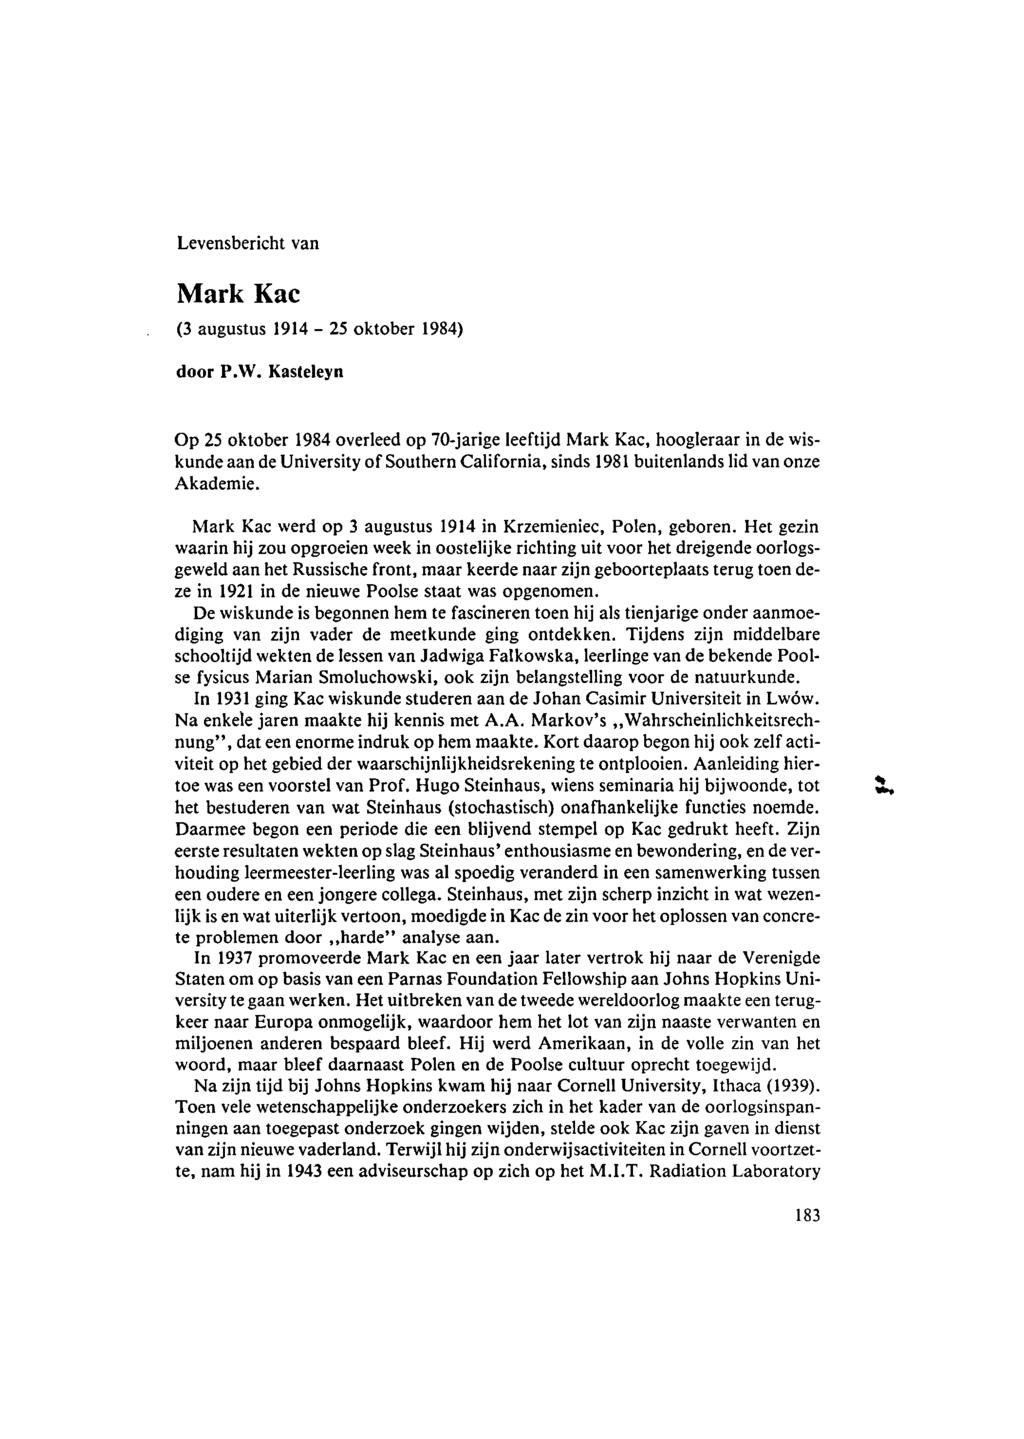 Levensbericht van Mark Kac (3 augustus 1914-25 oktober 1984) door P.W.